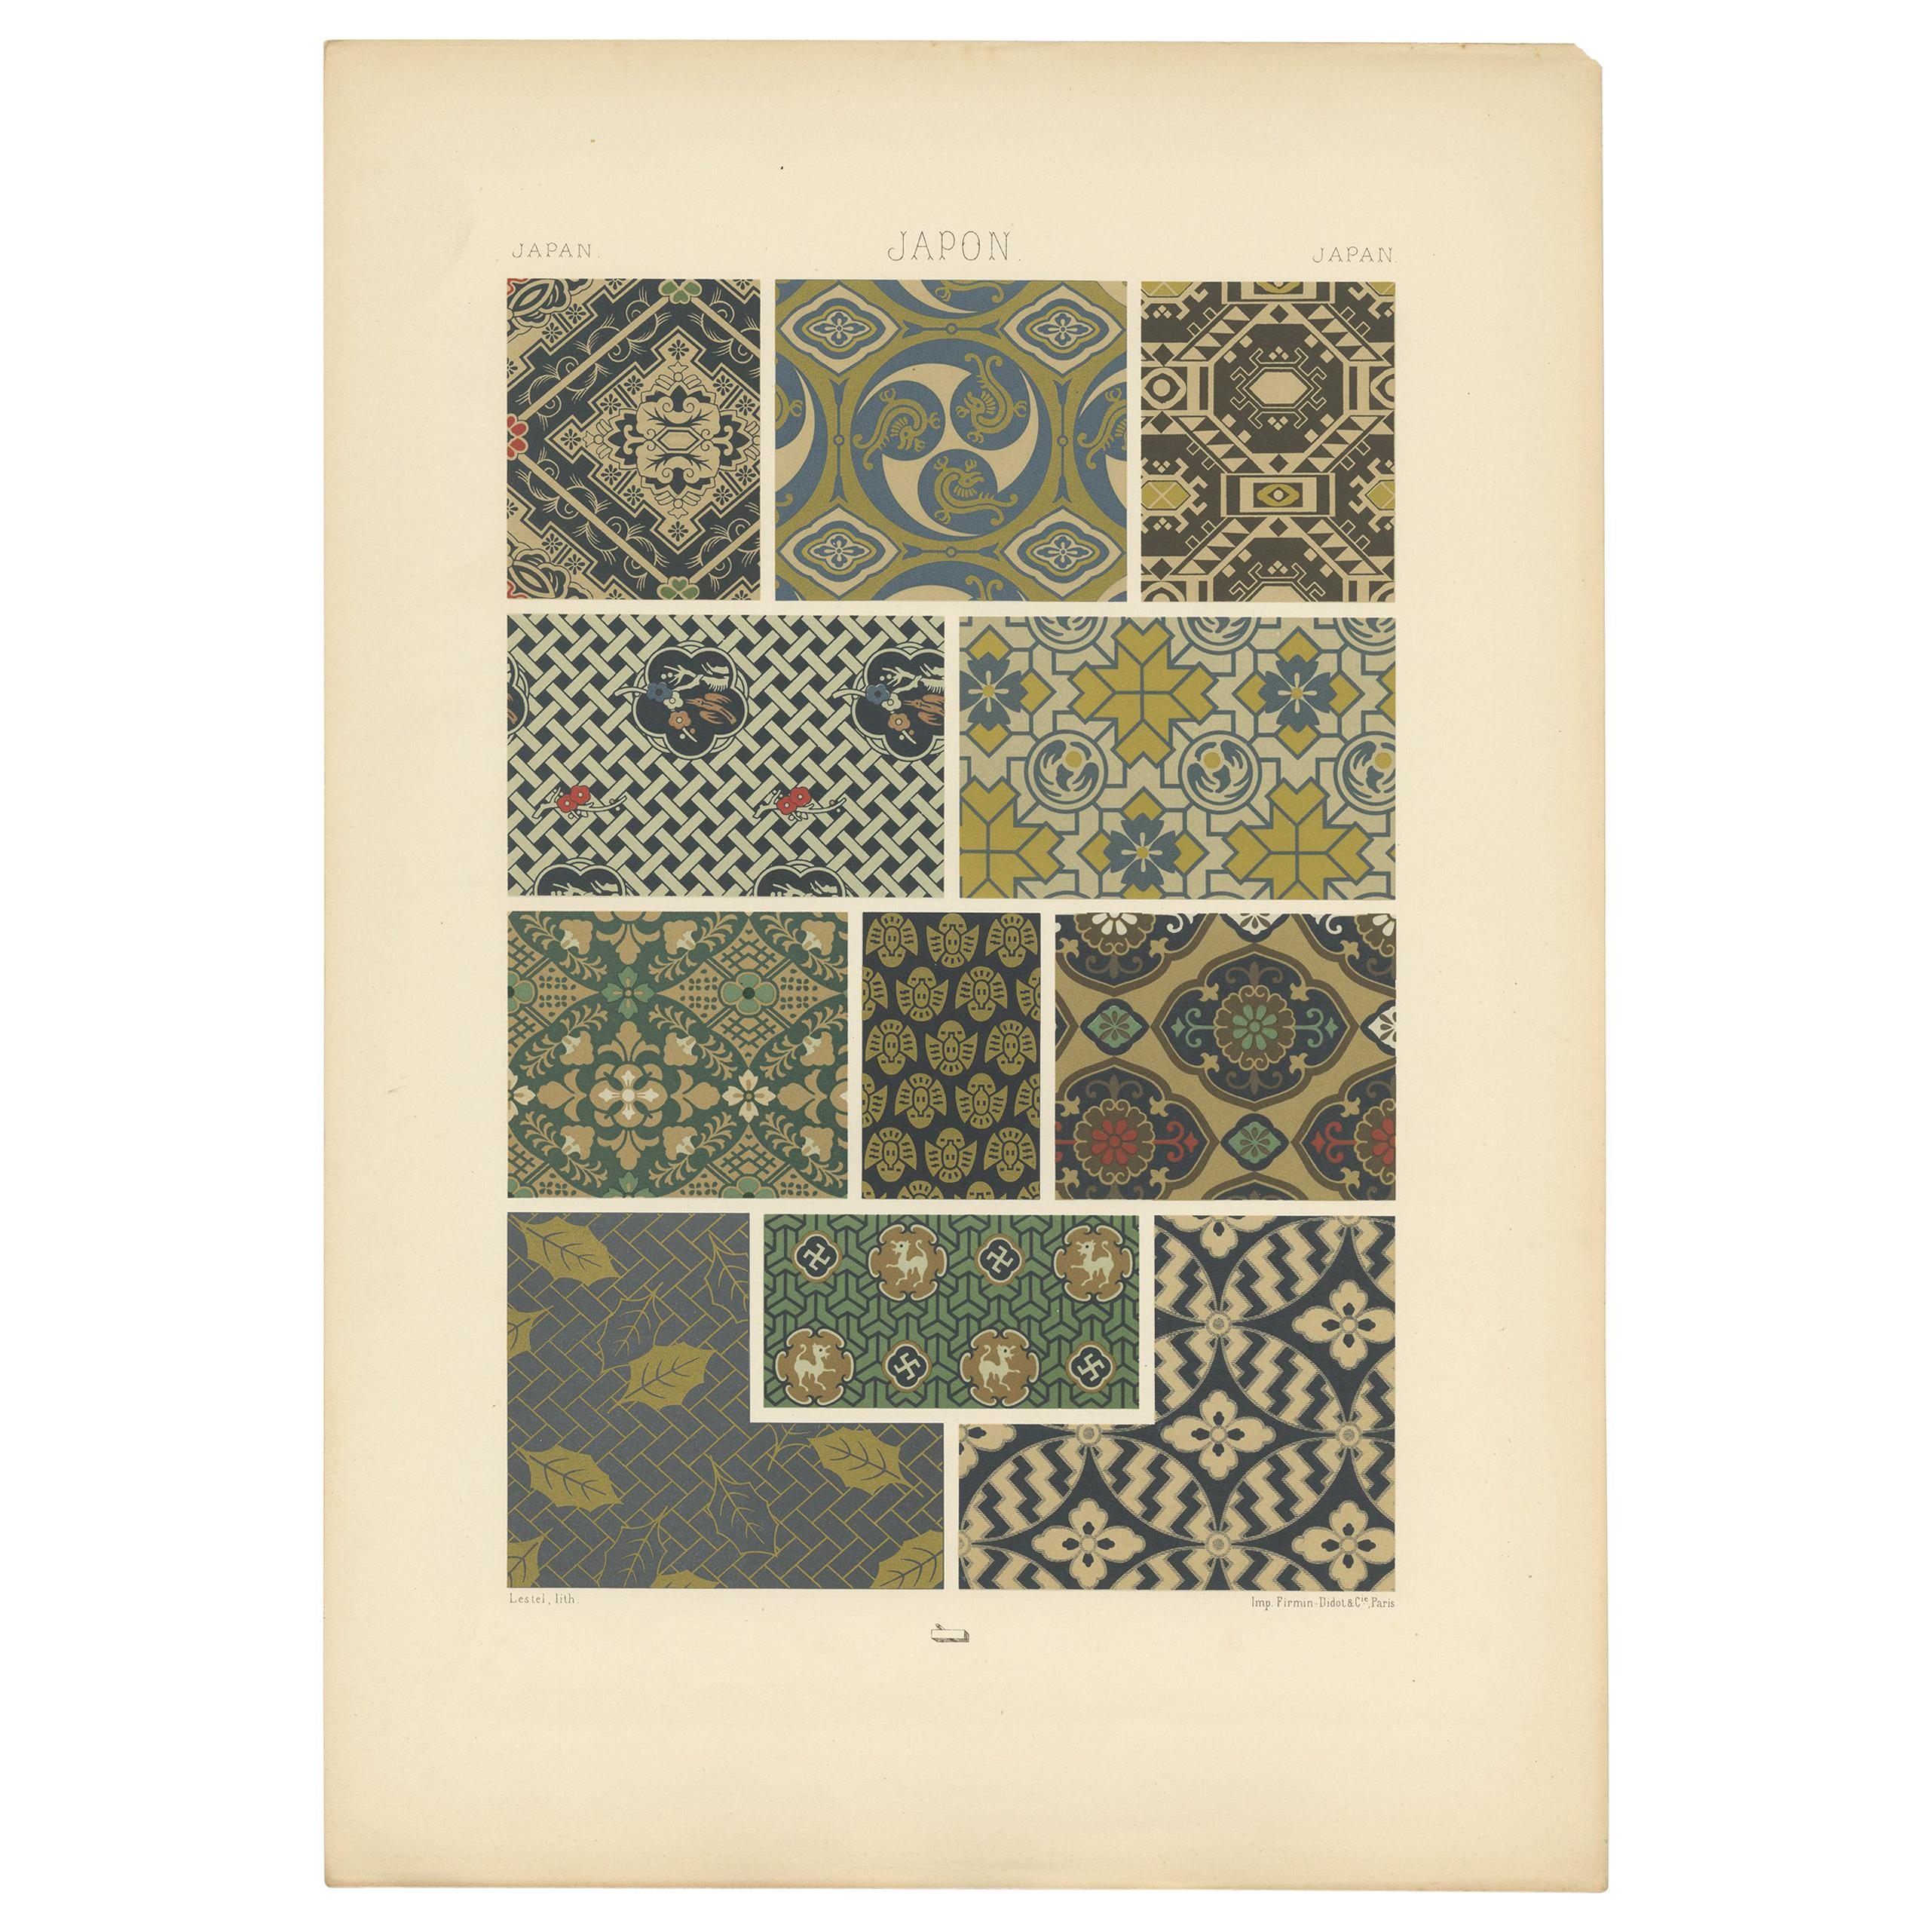 Pl. 12 Antiker Druck mit japanischen Motiven und Textilornamenten von Racinet